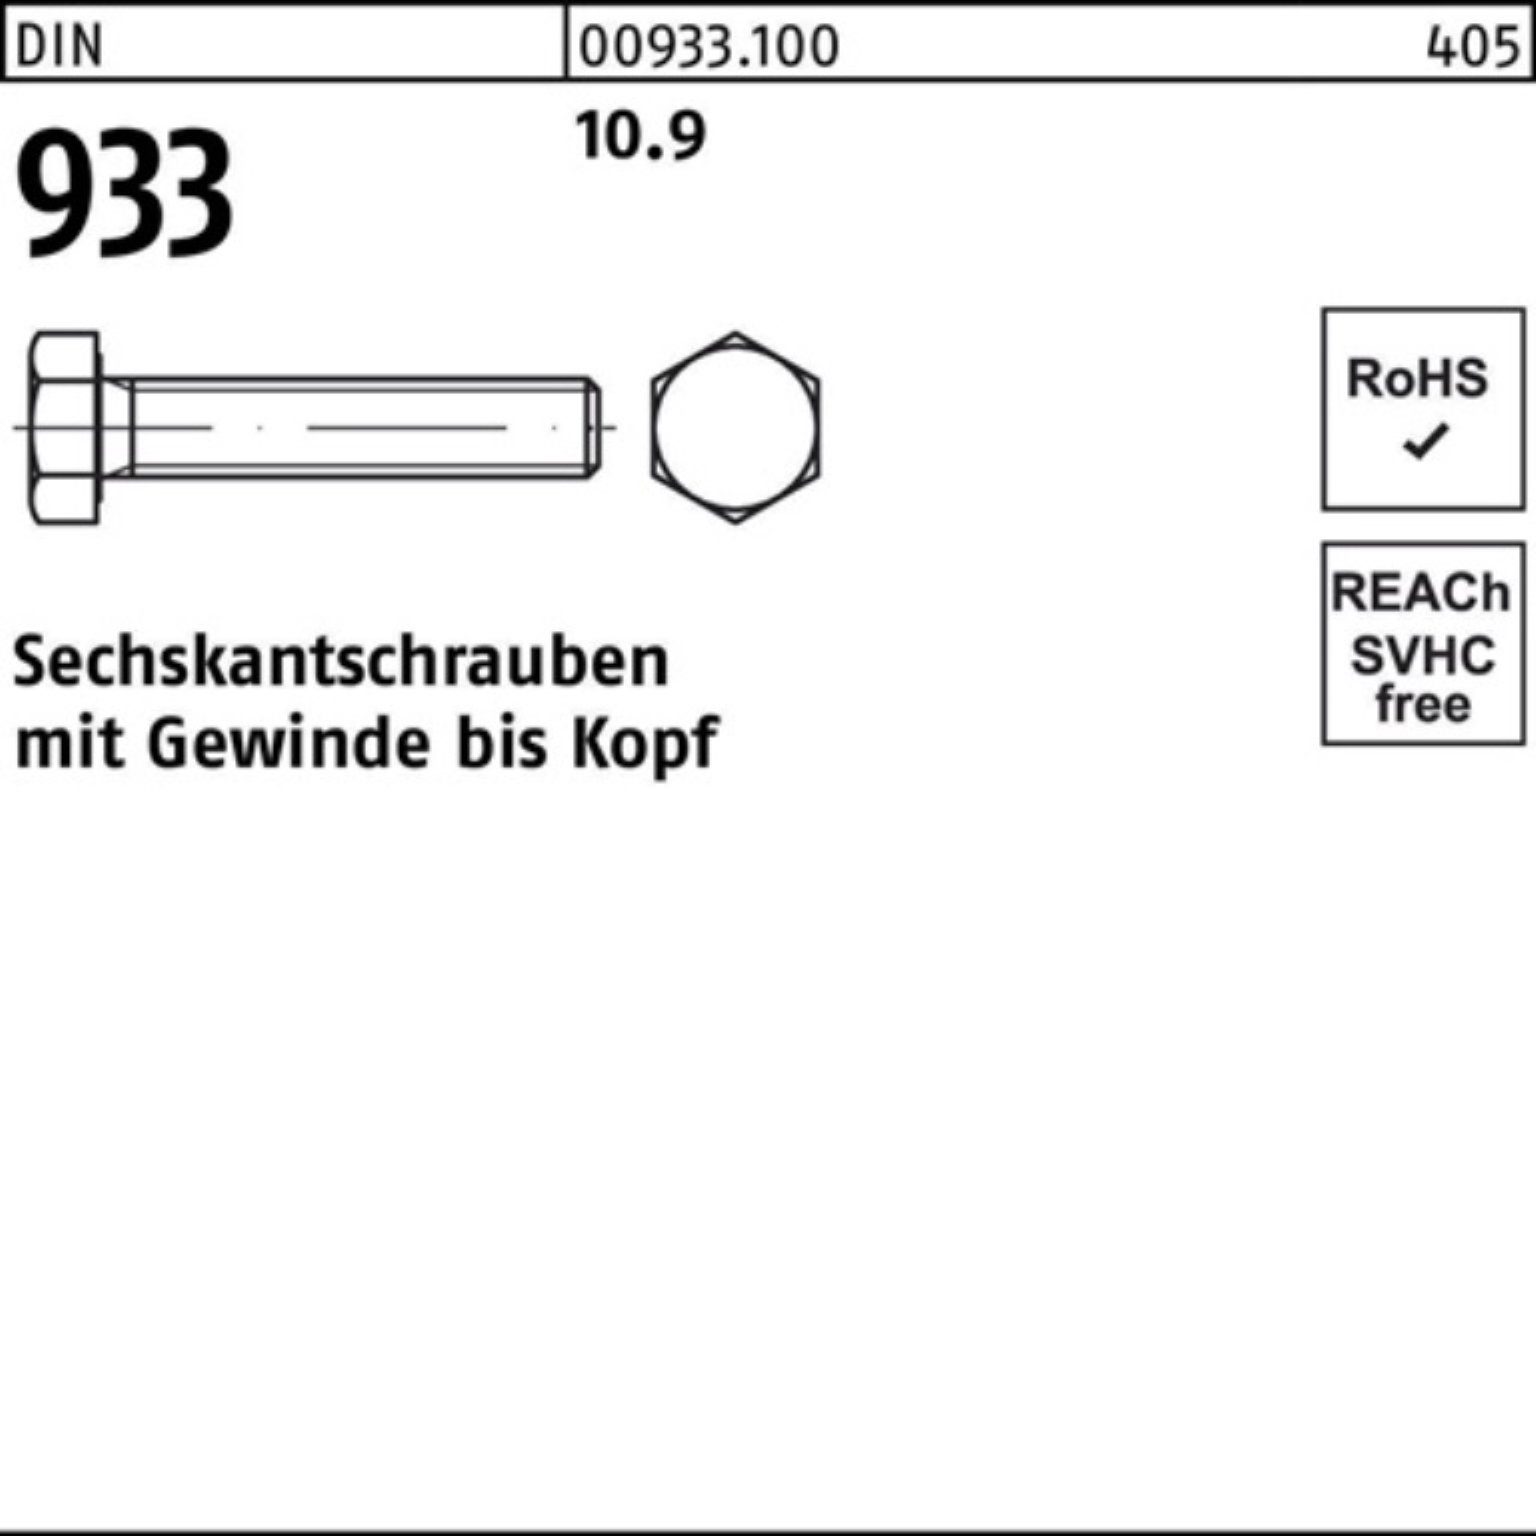 Reyher Sechskantschraube 100er Pack Sechskantschraube Stück 933 10.9 DIN M36x VG 933 65 DIN 1